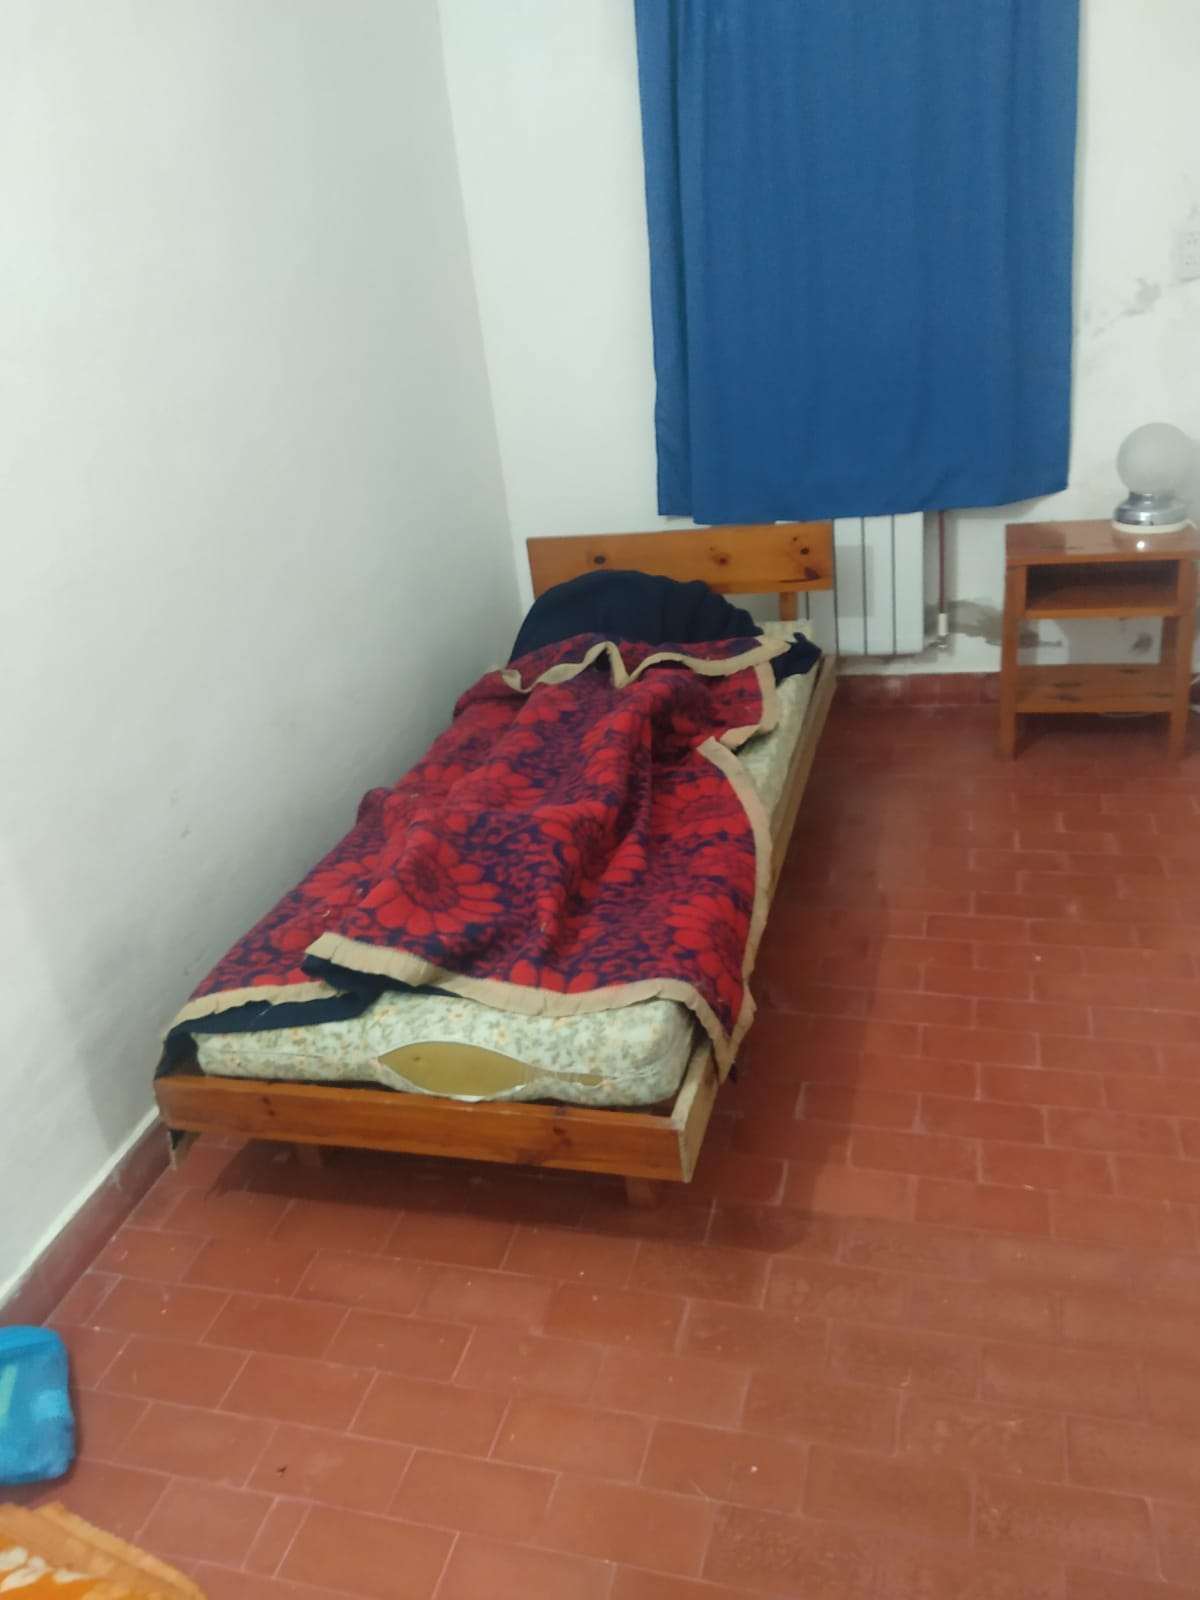 Un brasileño intentó fugarse dos veces del aislamiento en Gualeguaychú: Fue deportado